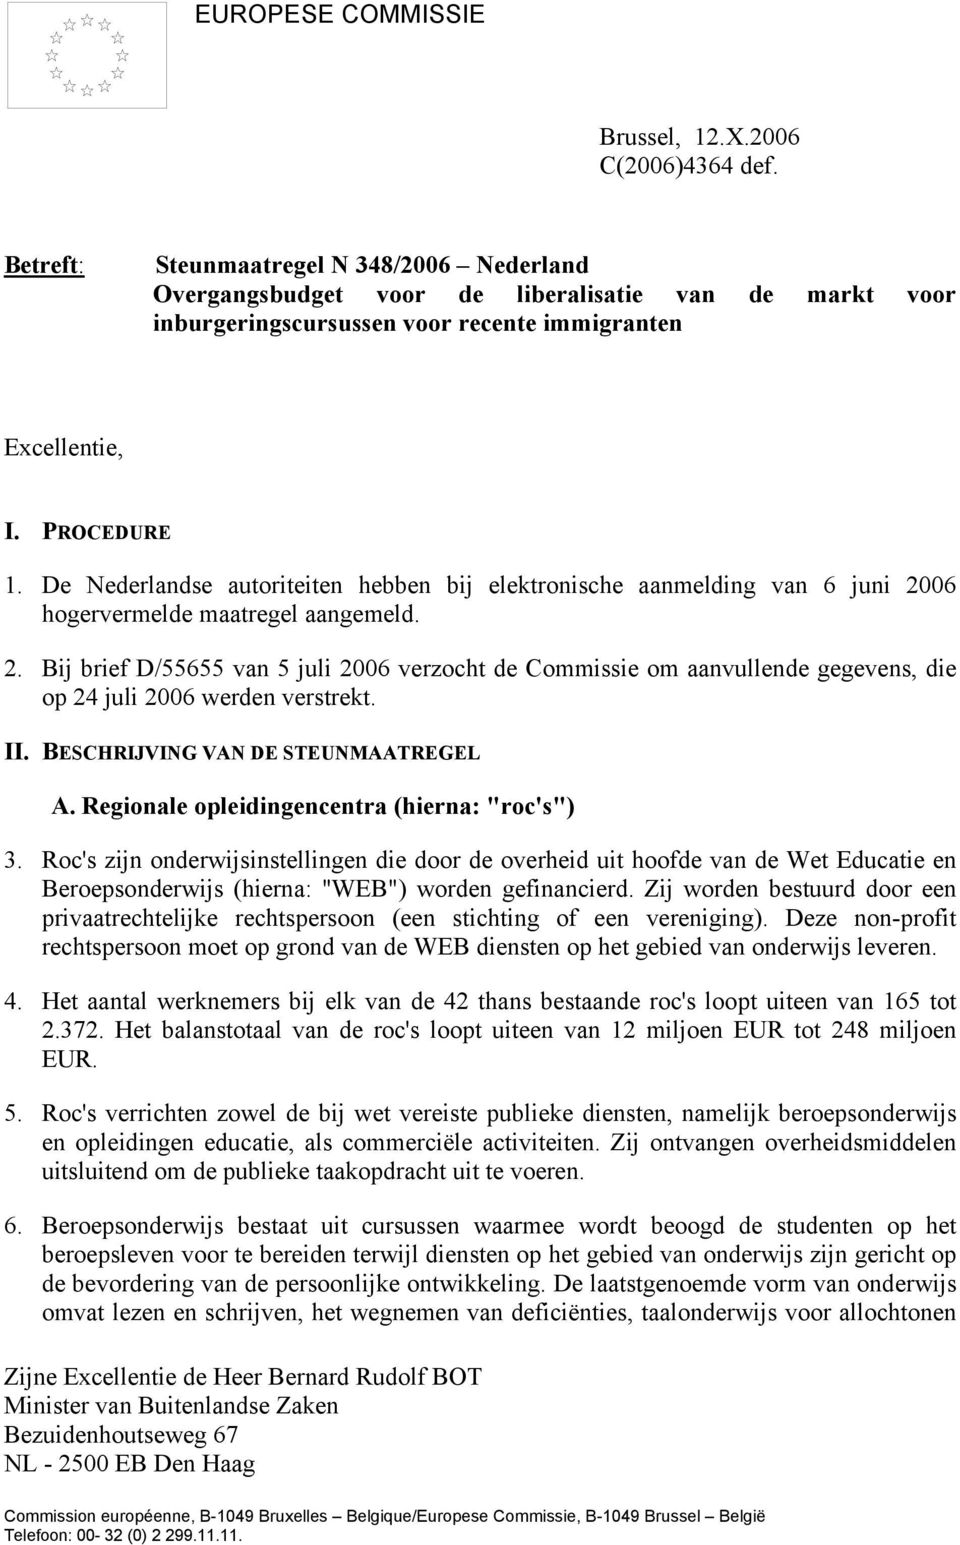 De Nederlandse autoriteiten hebben bij elektronische aanmelding van 6 juni 2006 hogervermelde maatregel aangemeld. 2. Bij brief D/55655 van 5 juli 2006 verzocht de Commissie om aanvullende gegevens, die op 24 juli 2006 werden verstrekt.